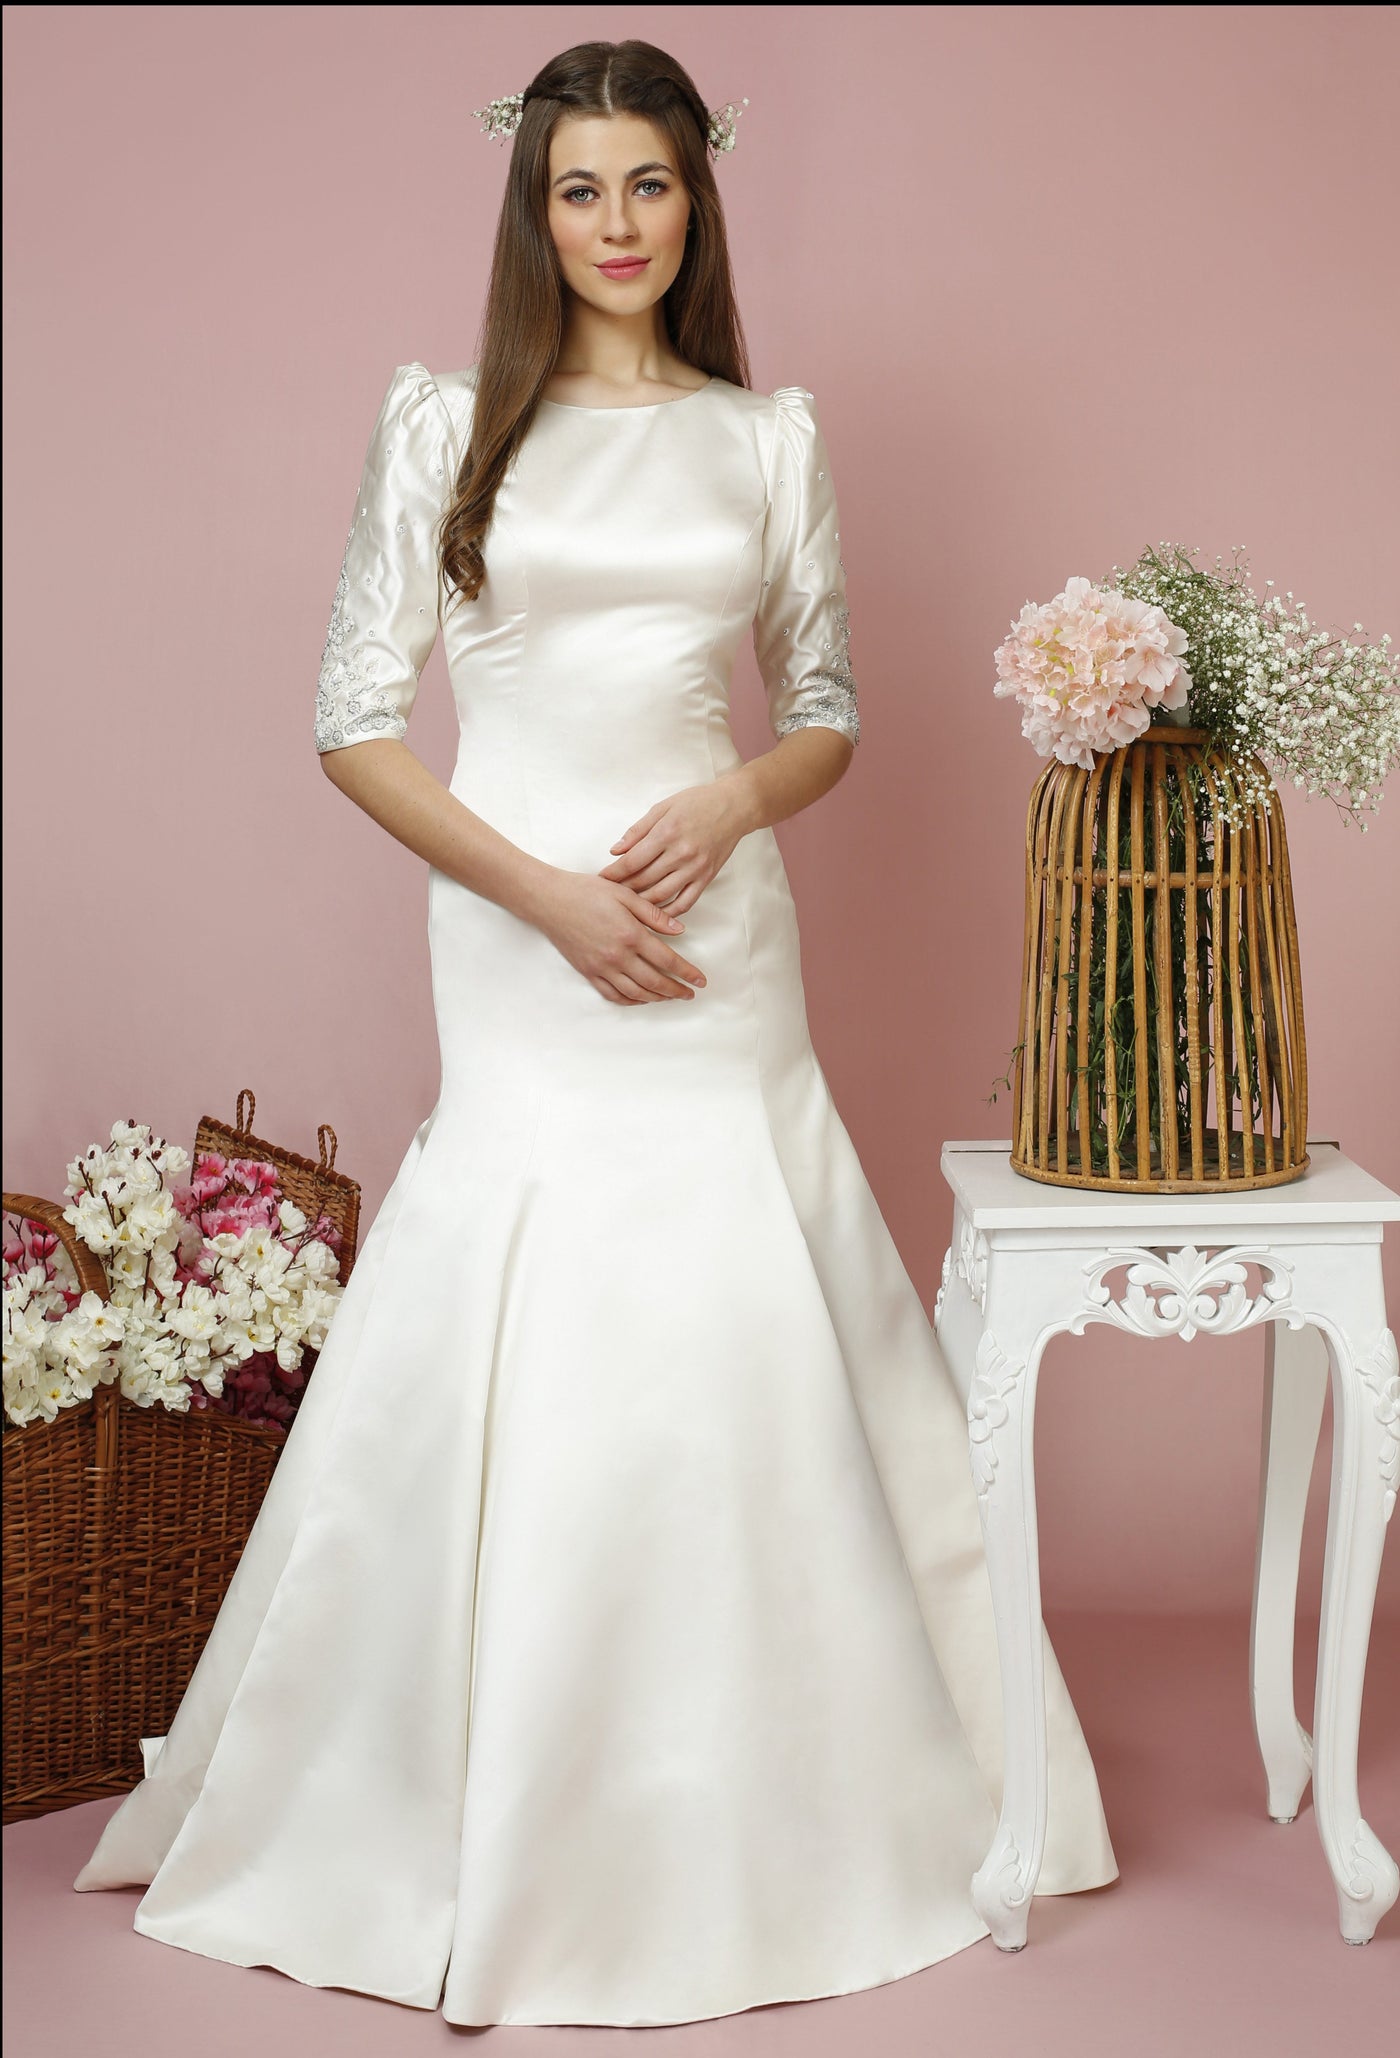 Anna - Satin Bridal Gown